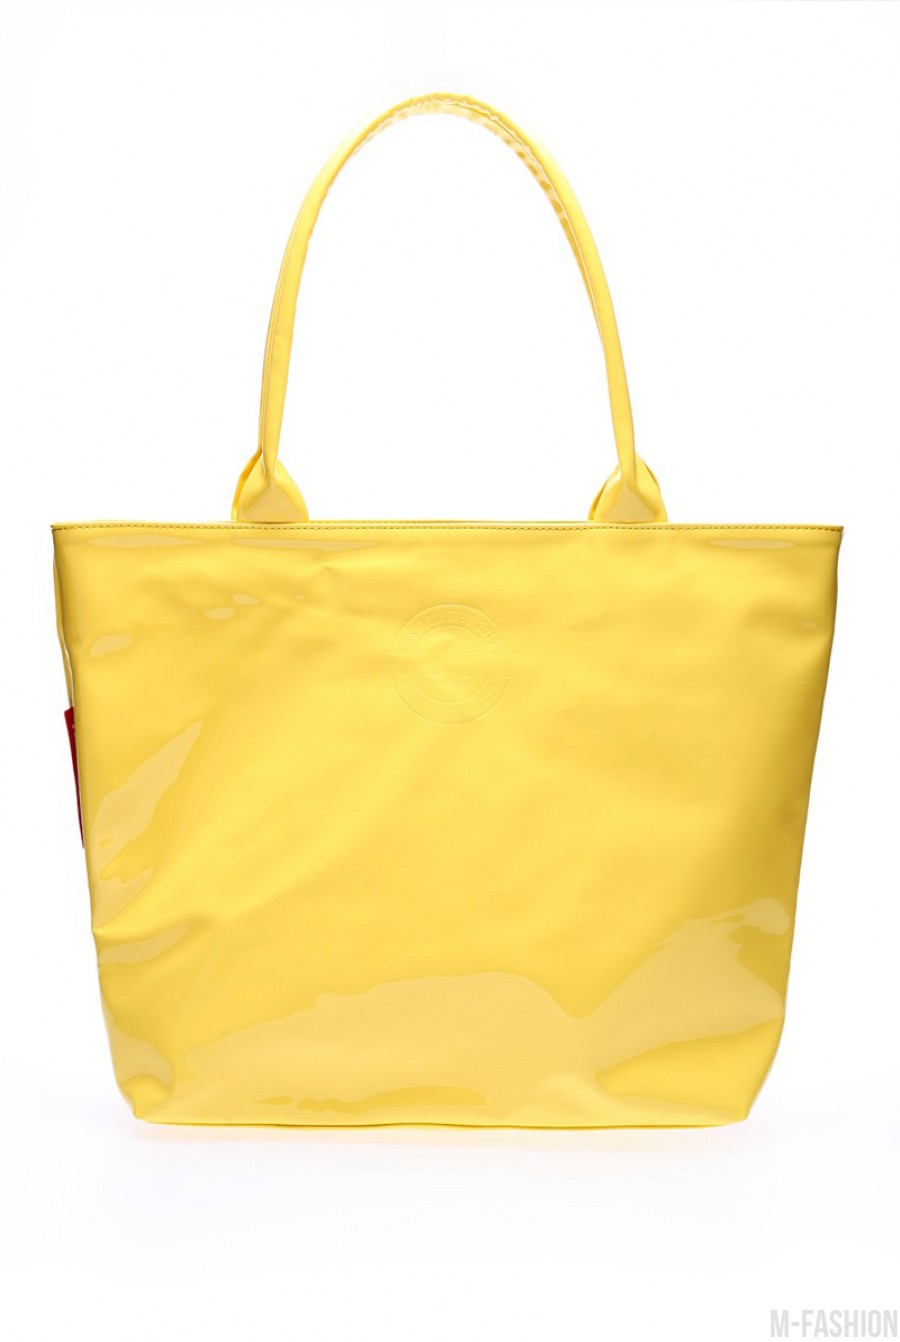 Желтая лаковая сумочка для яркого образа - Фото 1